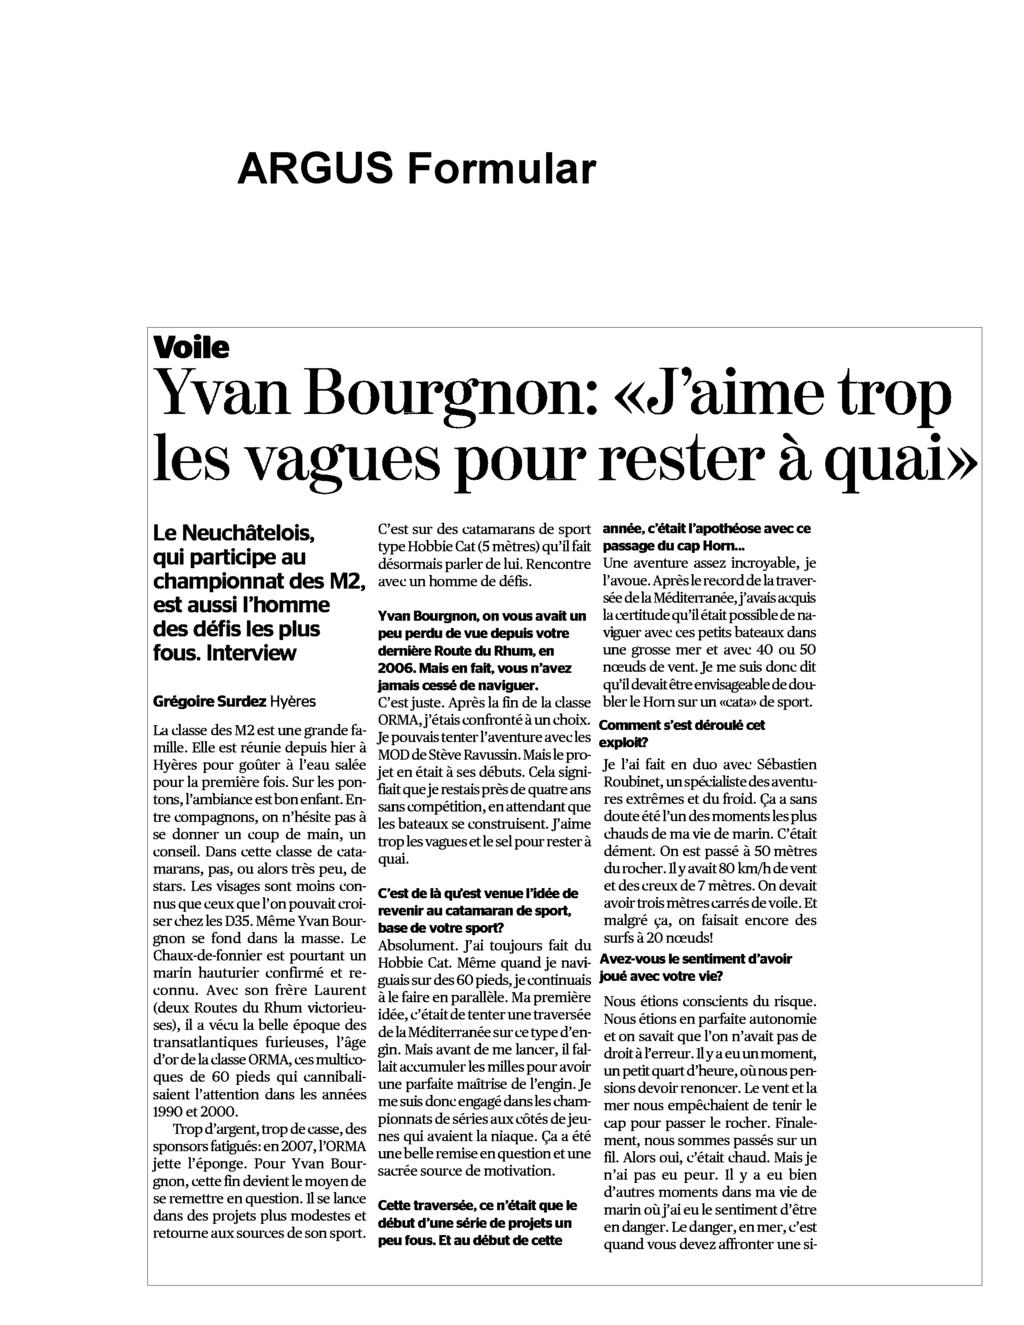 Tribune de Genève 18.05.2012 Seite 1 / 3 Auflage/ Seite 51487 / 15 6064 Ausgaben 300 / J.